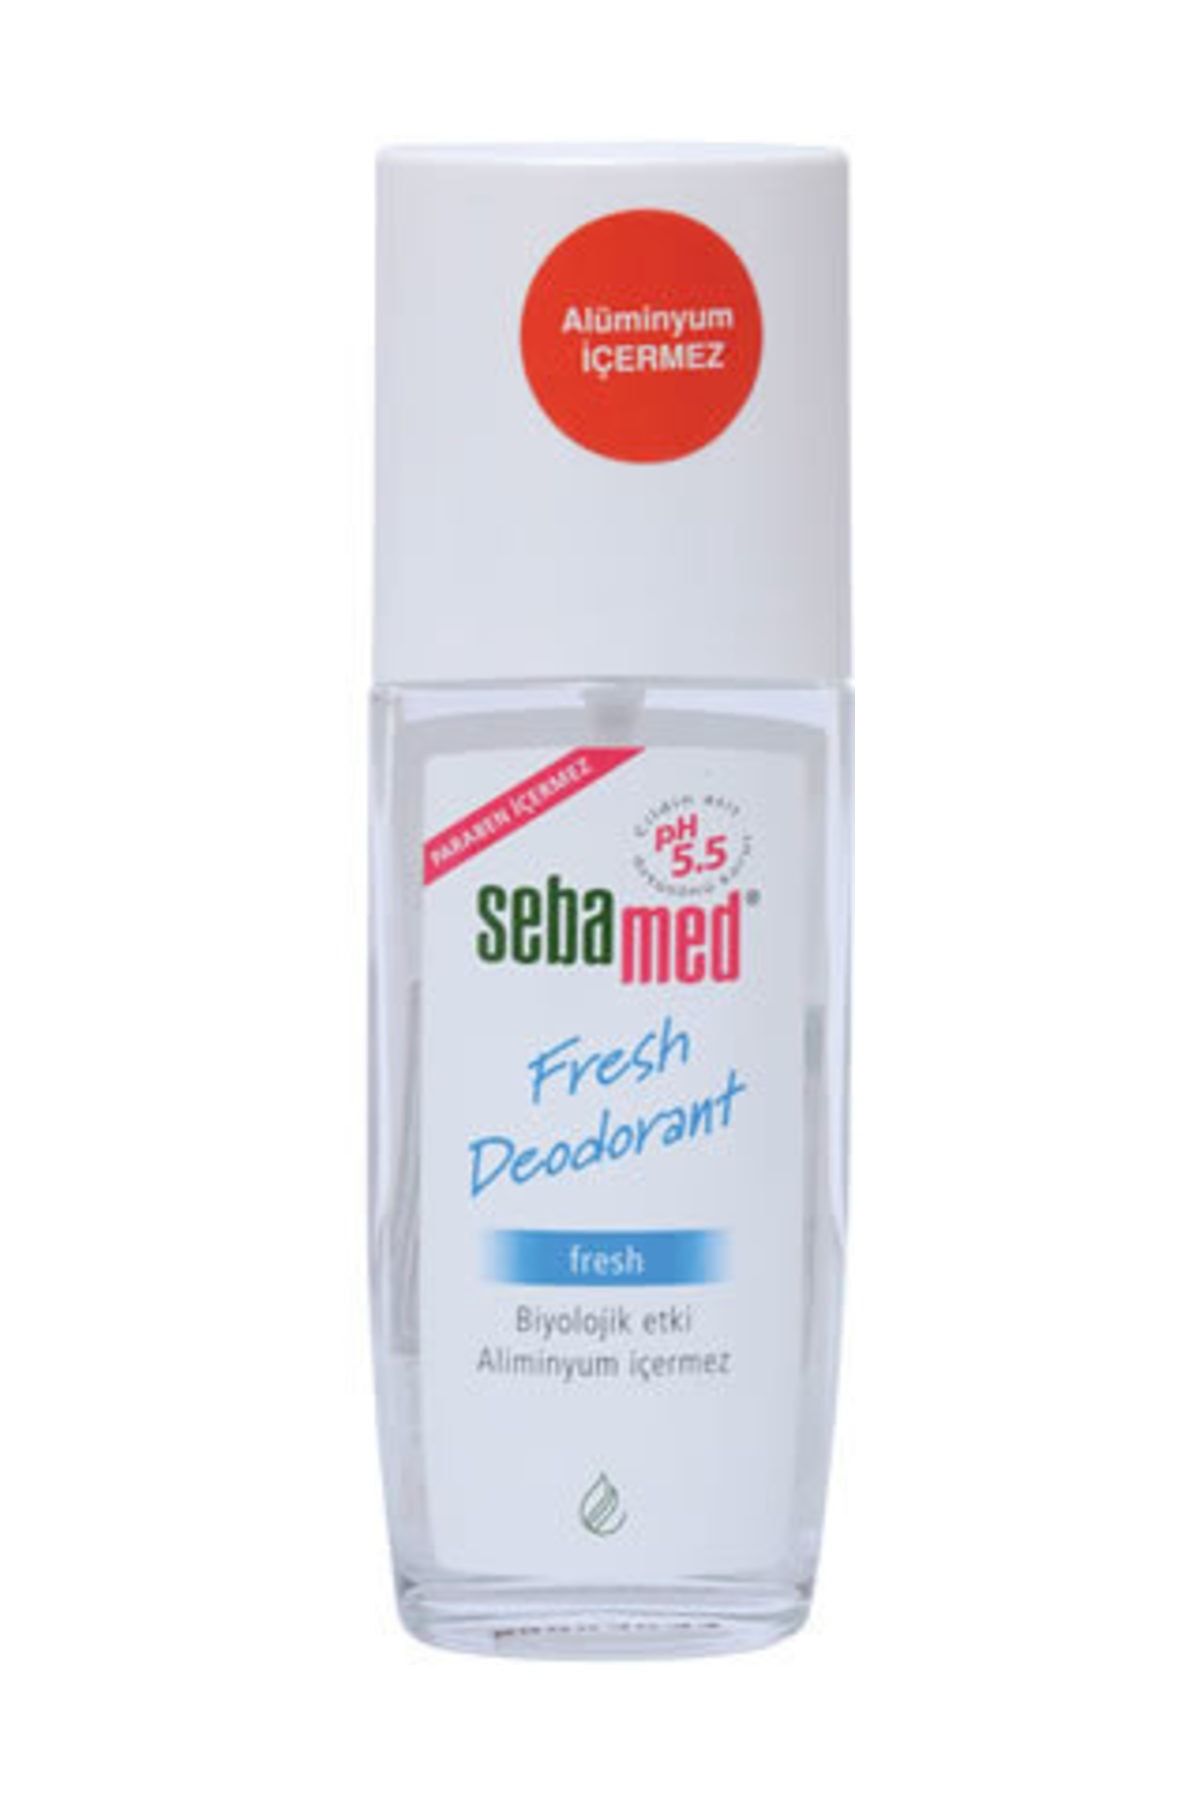 Sebamed Sebamed Deodorant Fresh 75 Ml